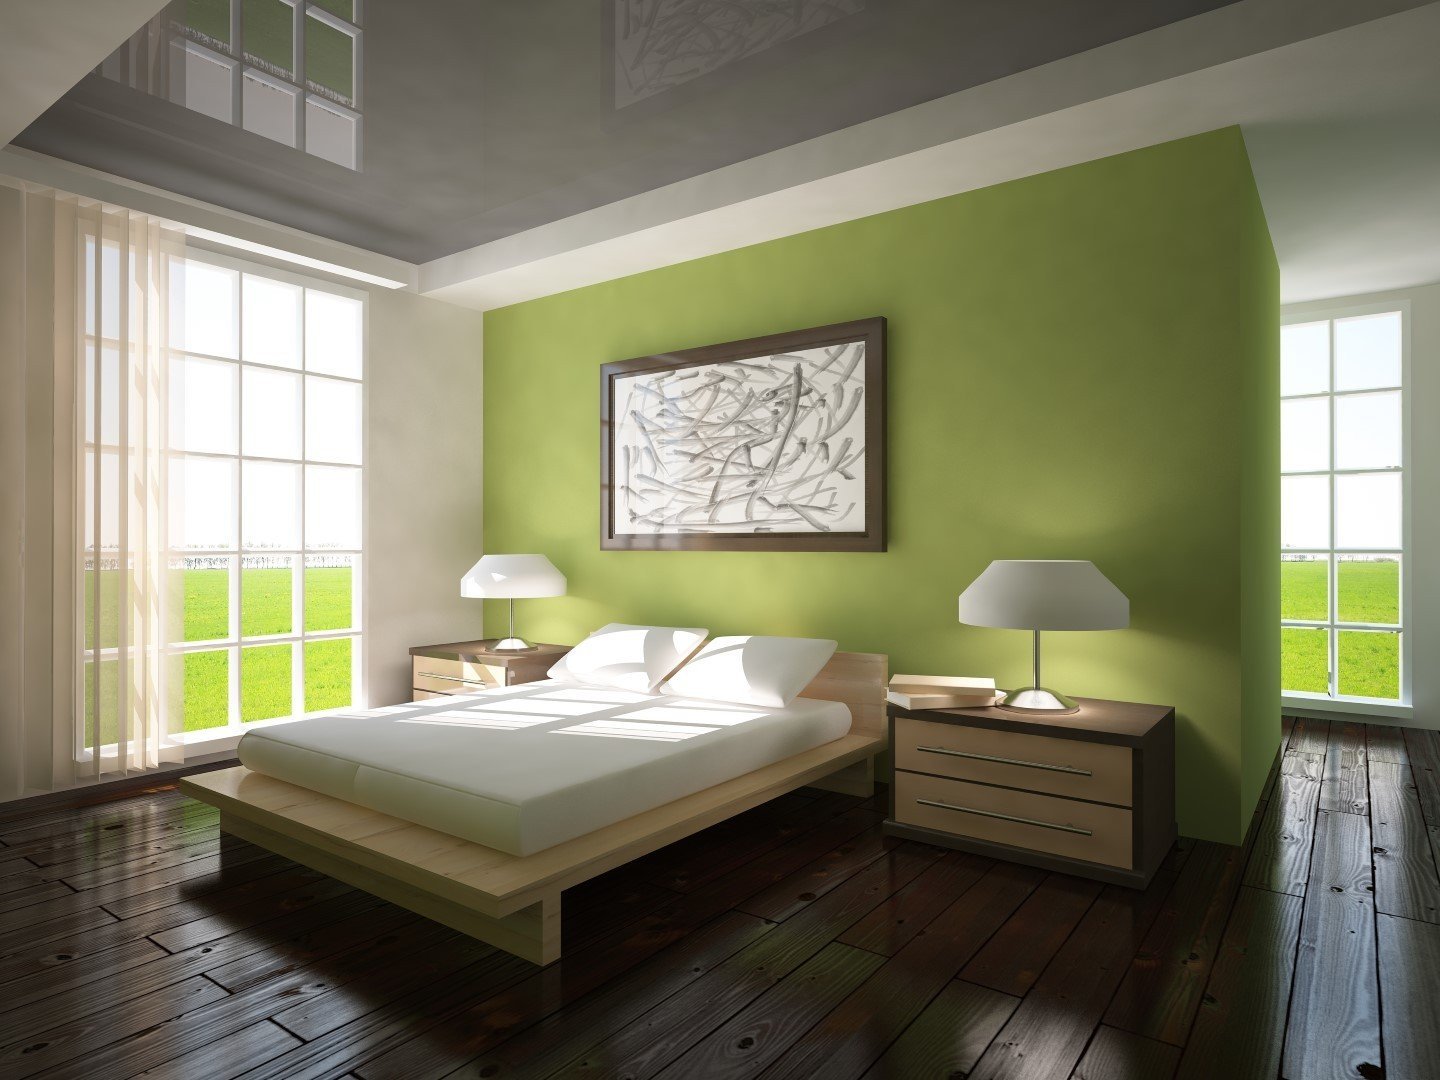 Зеленая спальня: идеи и советы по созданию уютного интерьера (60 фото)